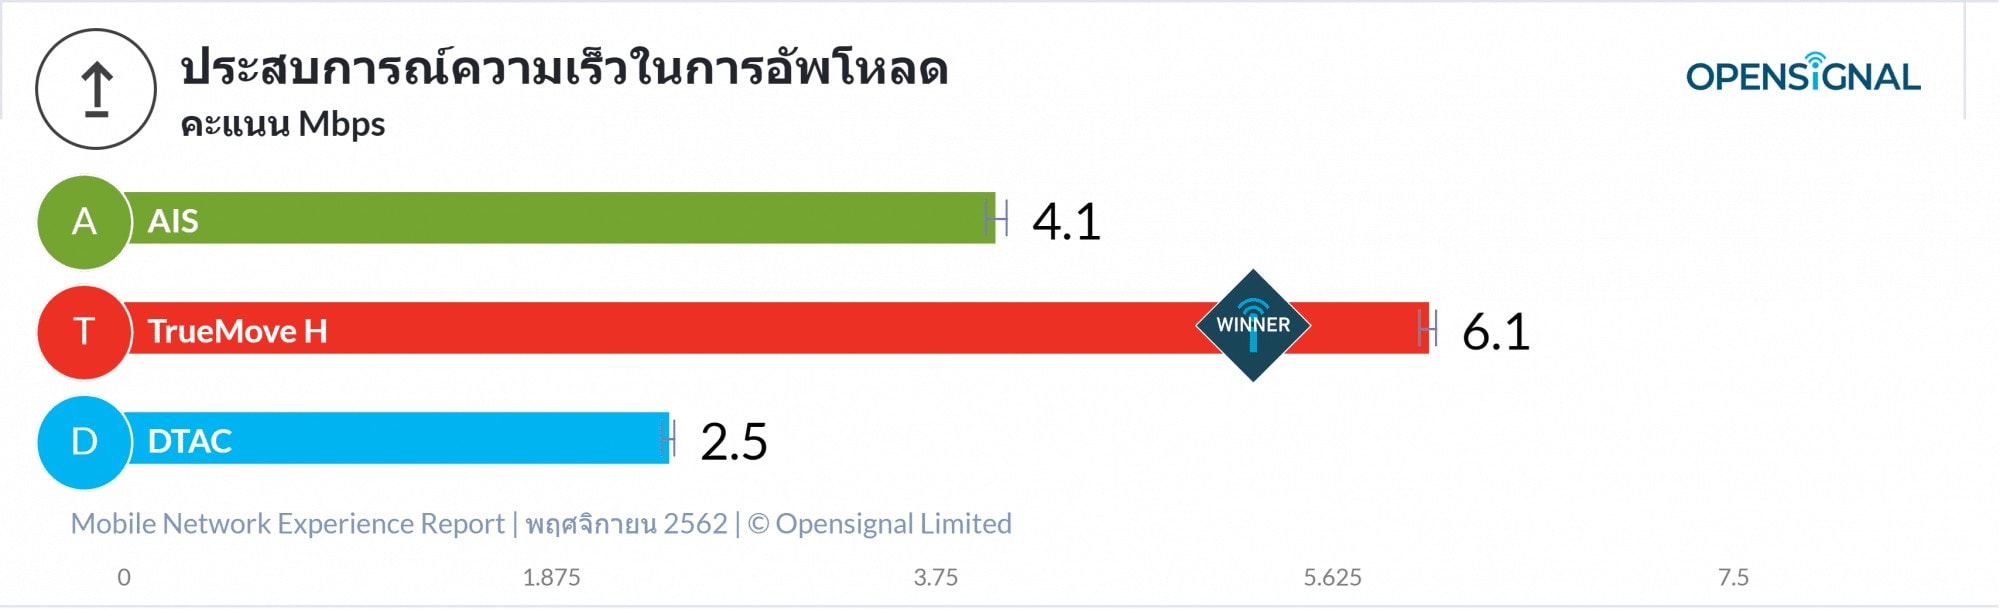 OpenSignal เผยรายงานวิเคราะห์ประสบการณ์เครือข่ายมือถือของไทย TrueMove H นำอันดับหนึ่ง 13